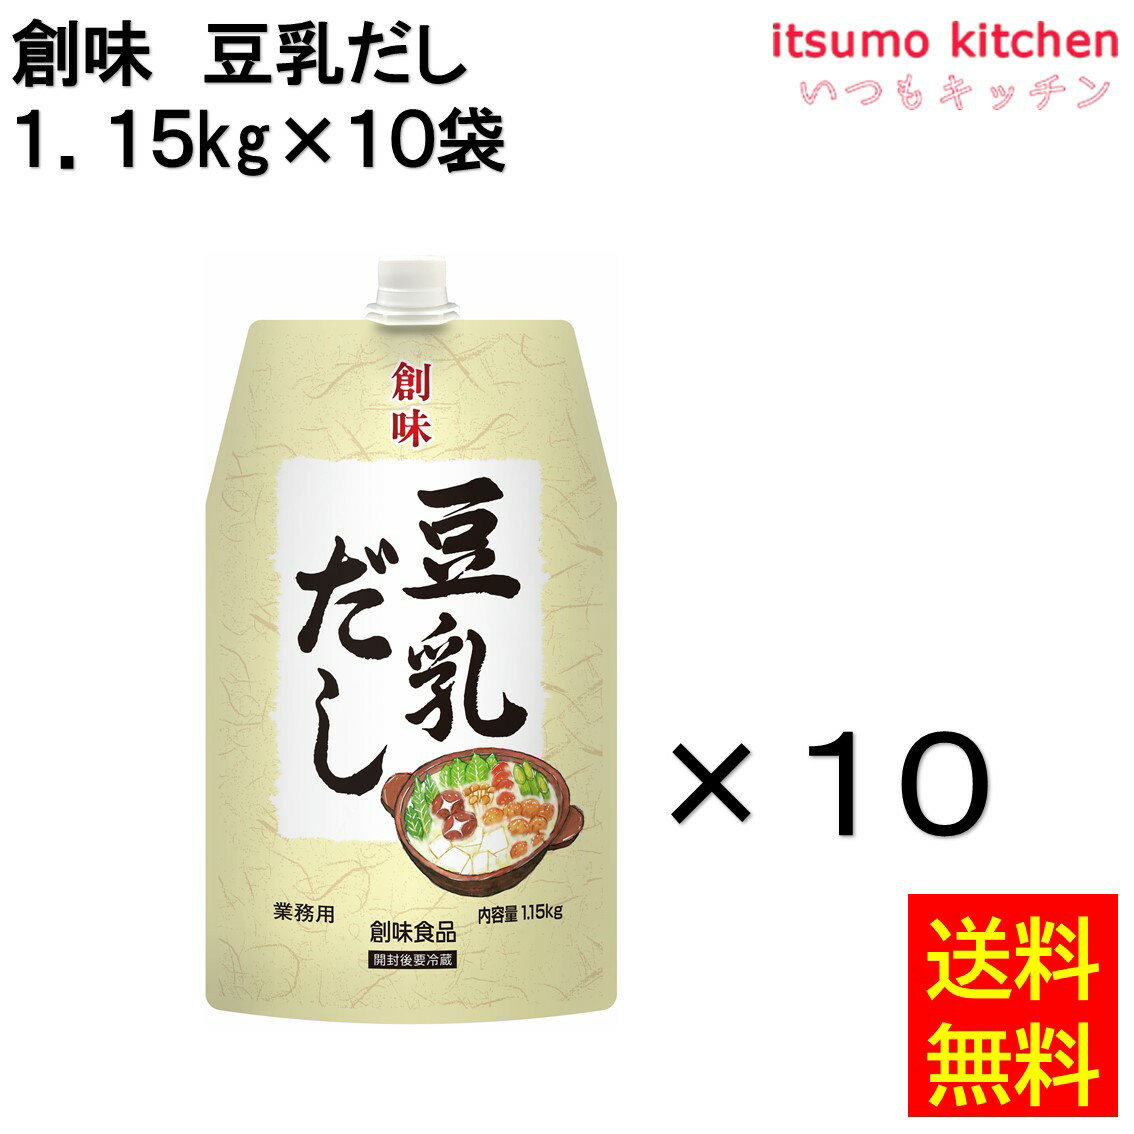 【送料無料】創味 豆乳だし 1.15kg 10袋 創味食品